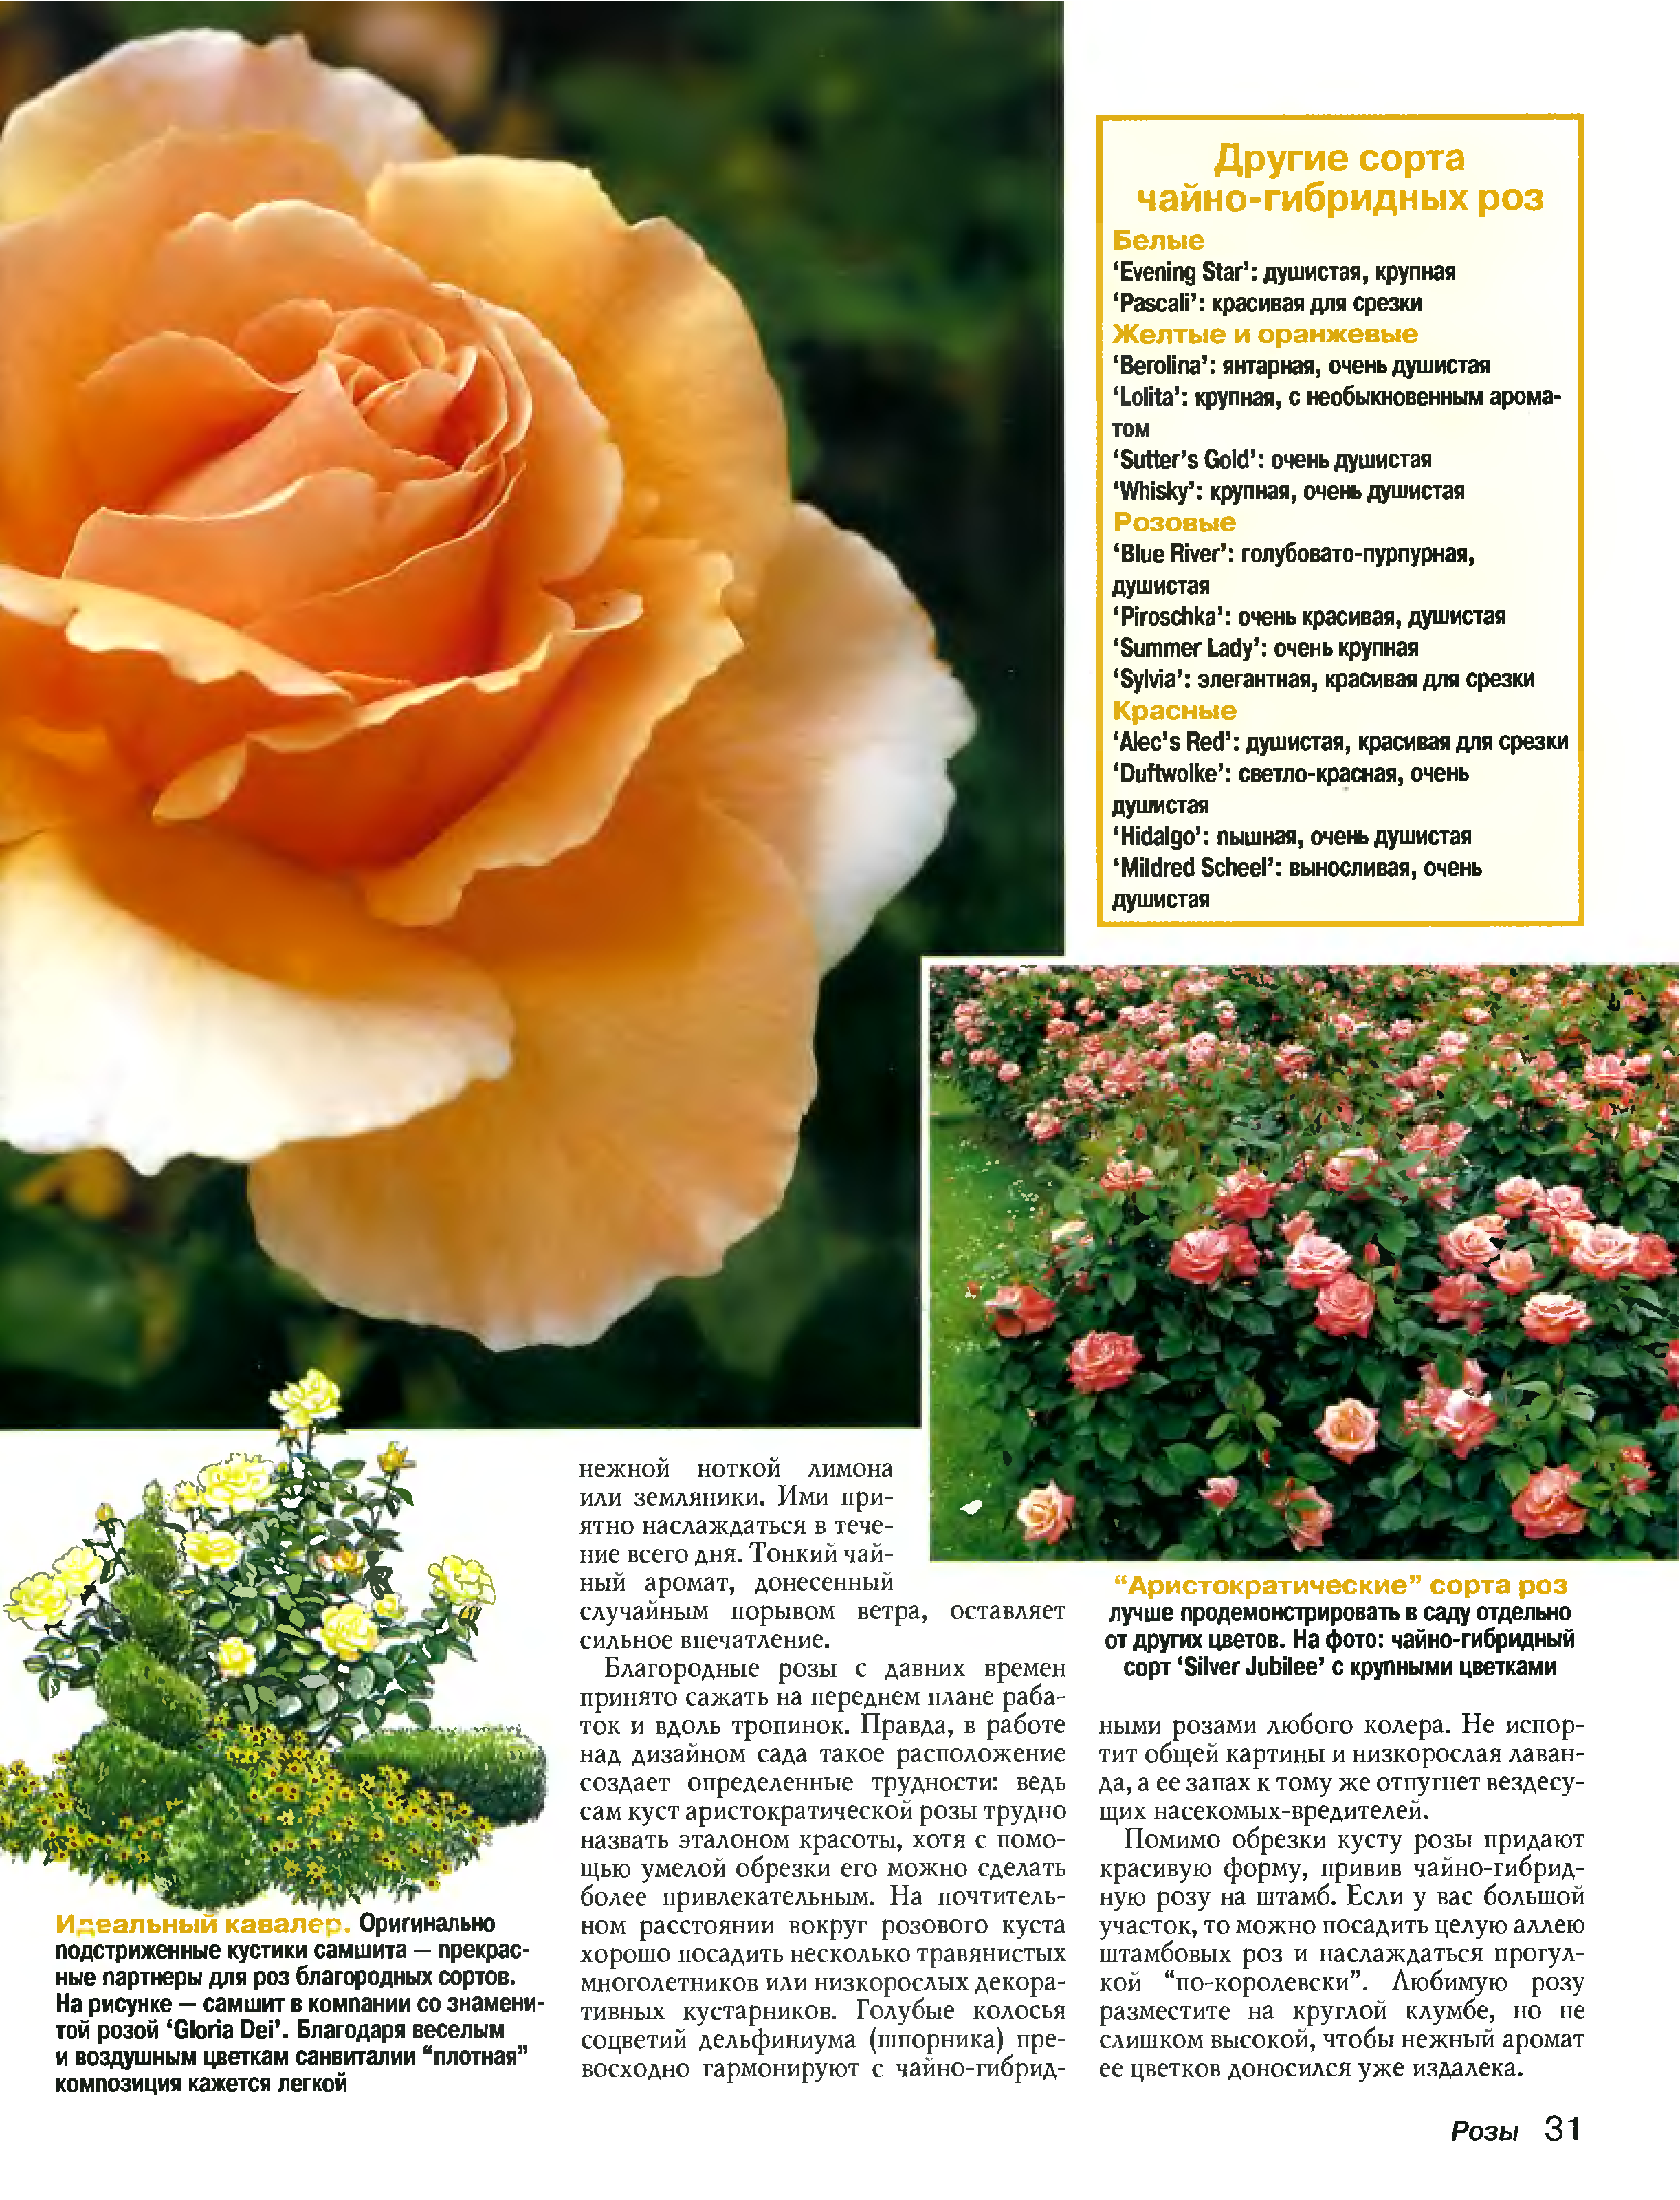 Кордес бриллиант - описание сорта розы, яркая деталь, условия выращивания